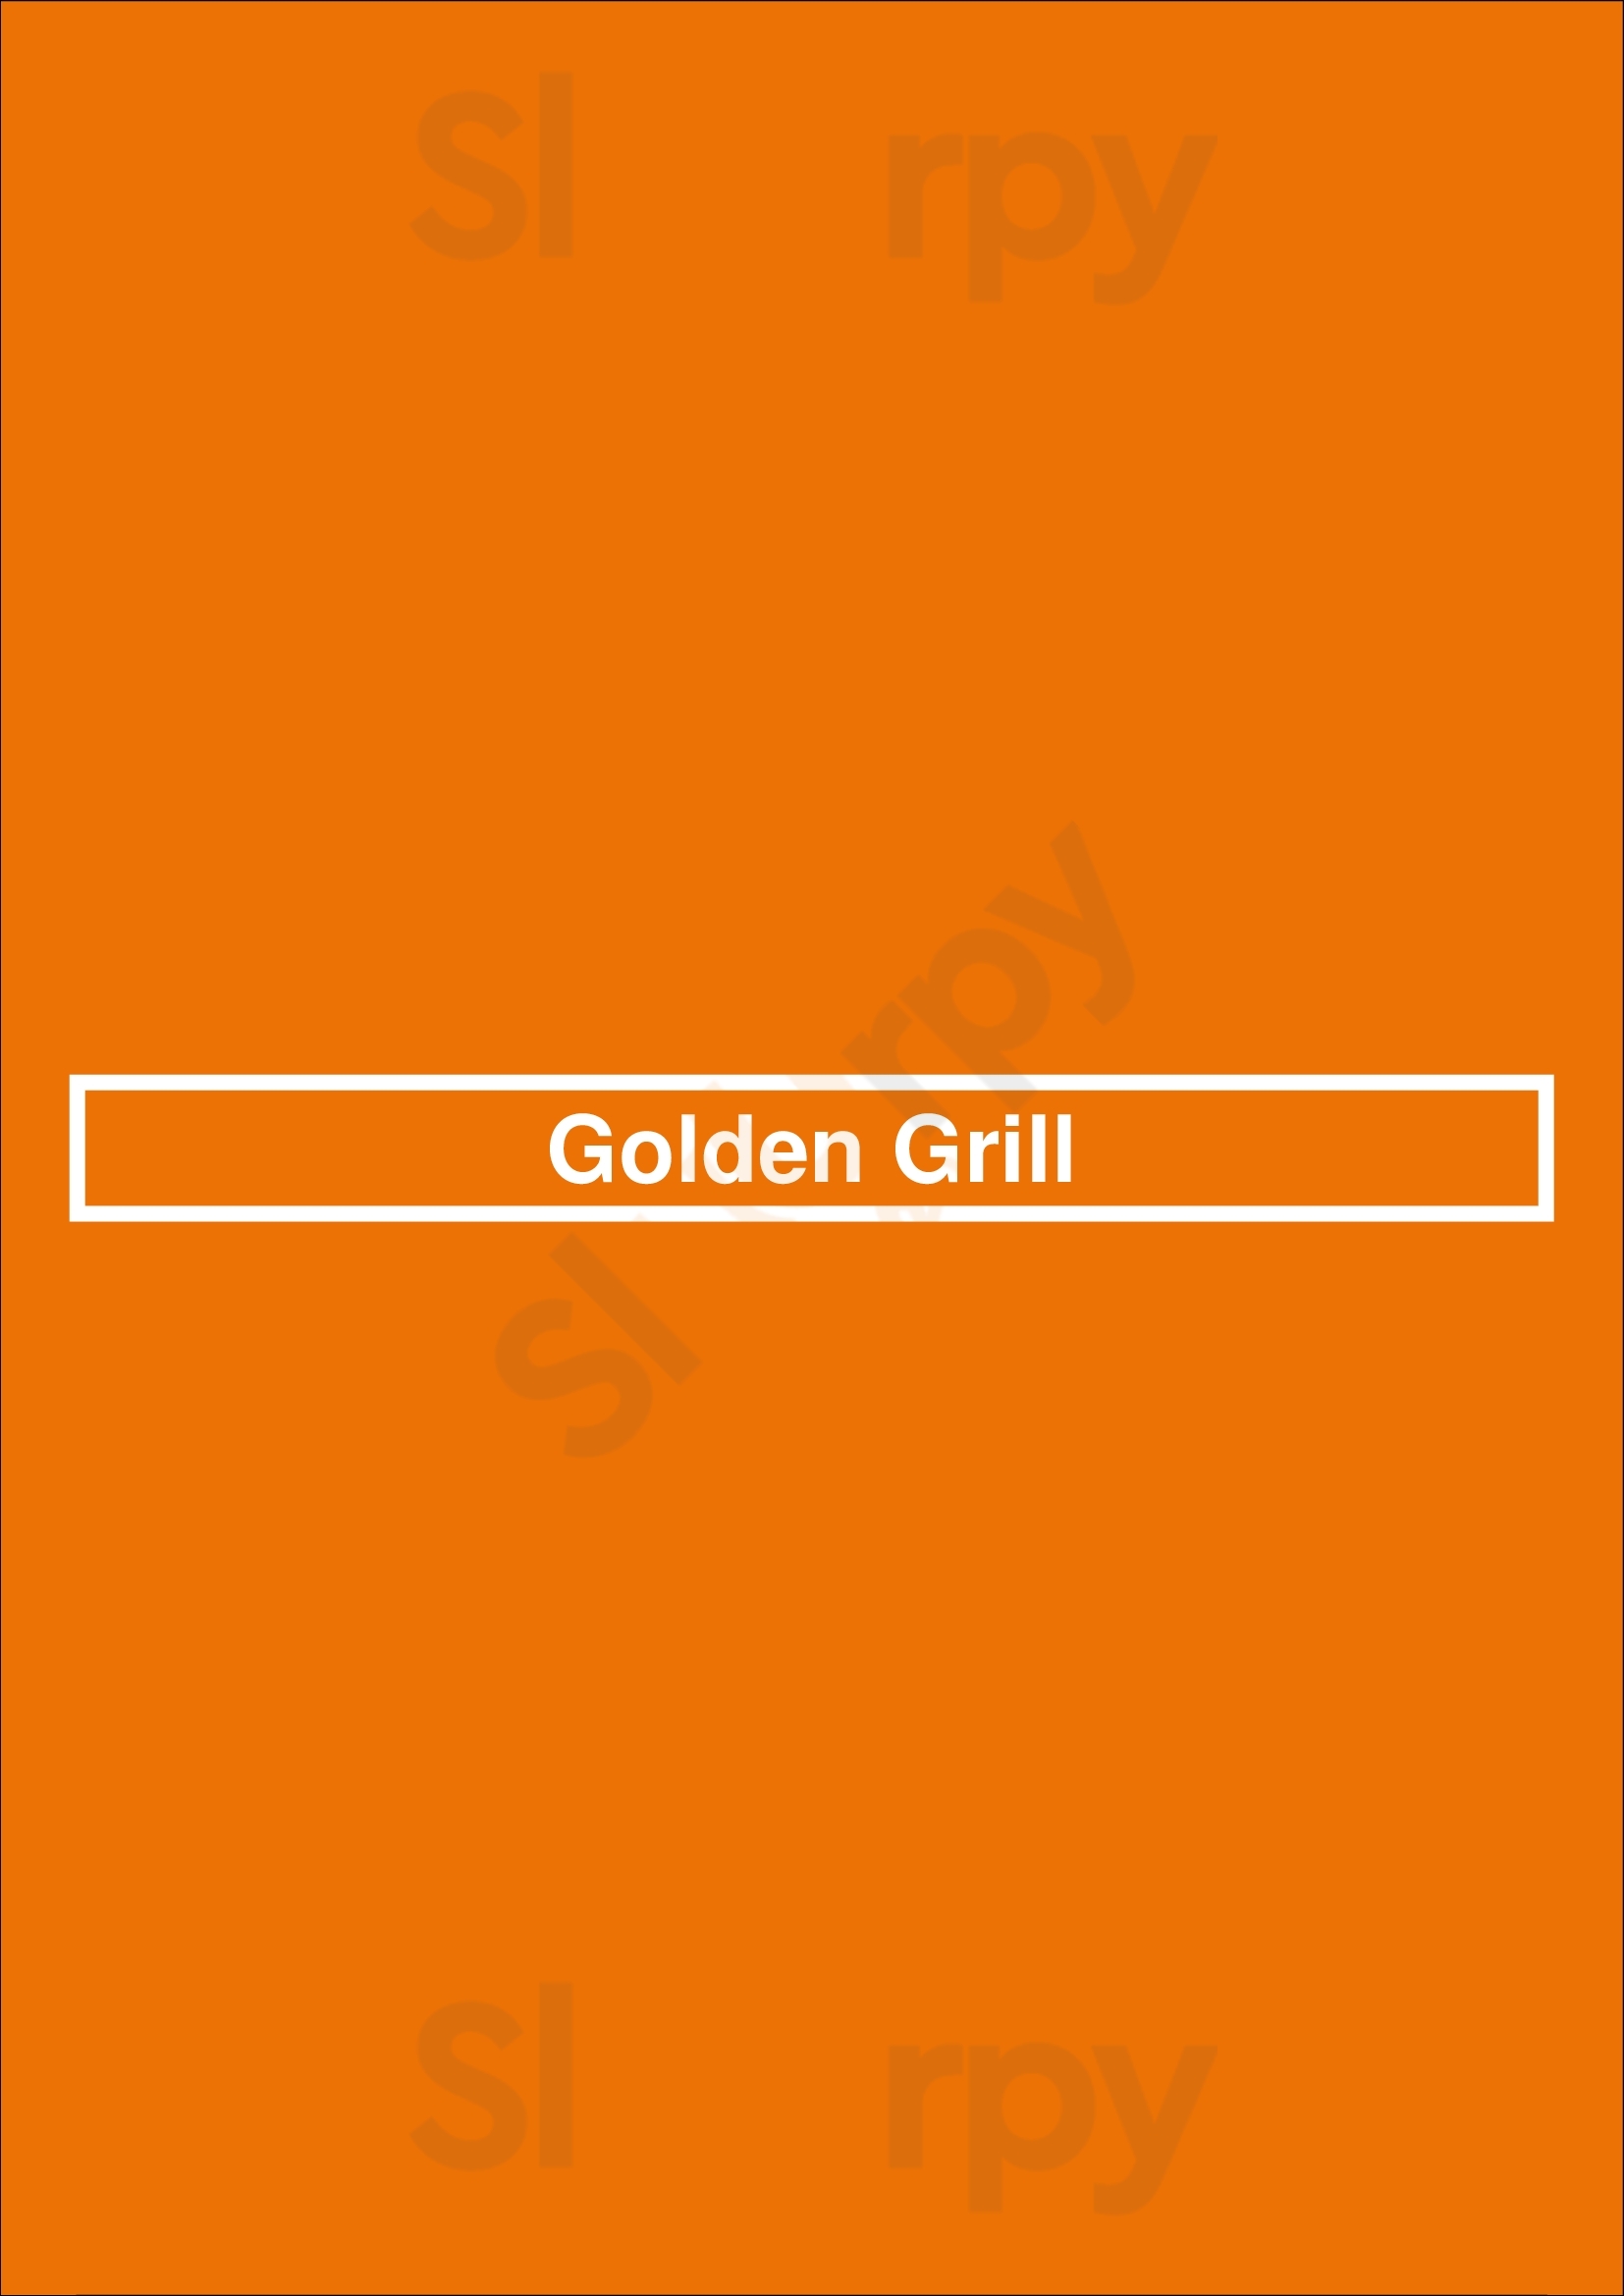 Golden Grill Newport Menu - 1